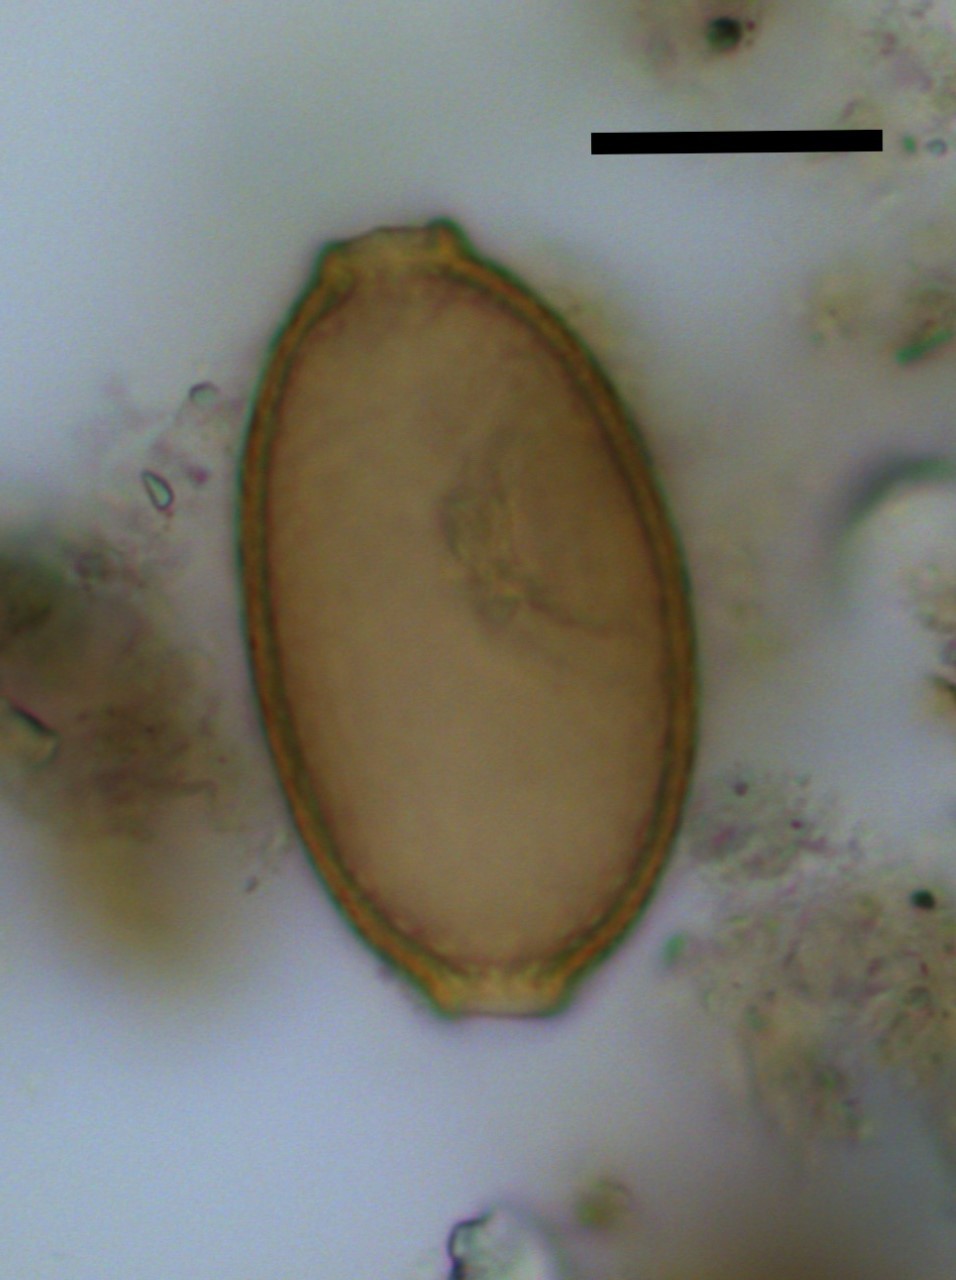 Vista al microscopio de un huevo de un parásito hallado en heces